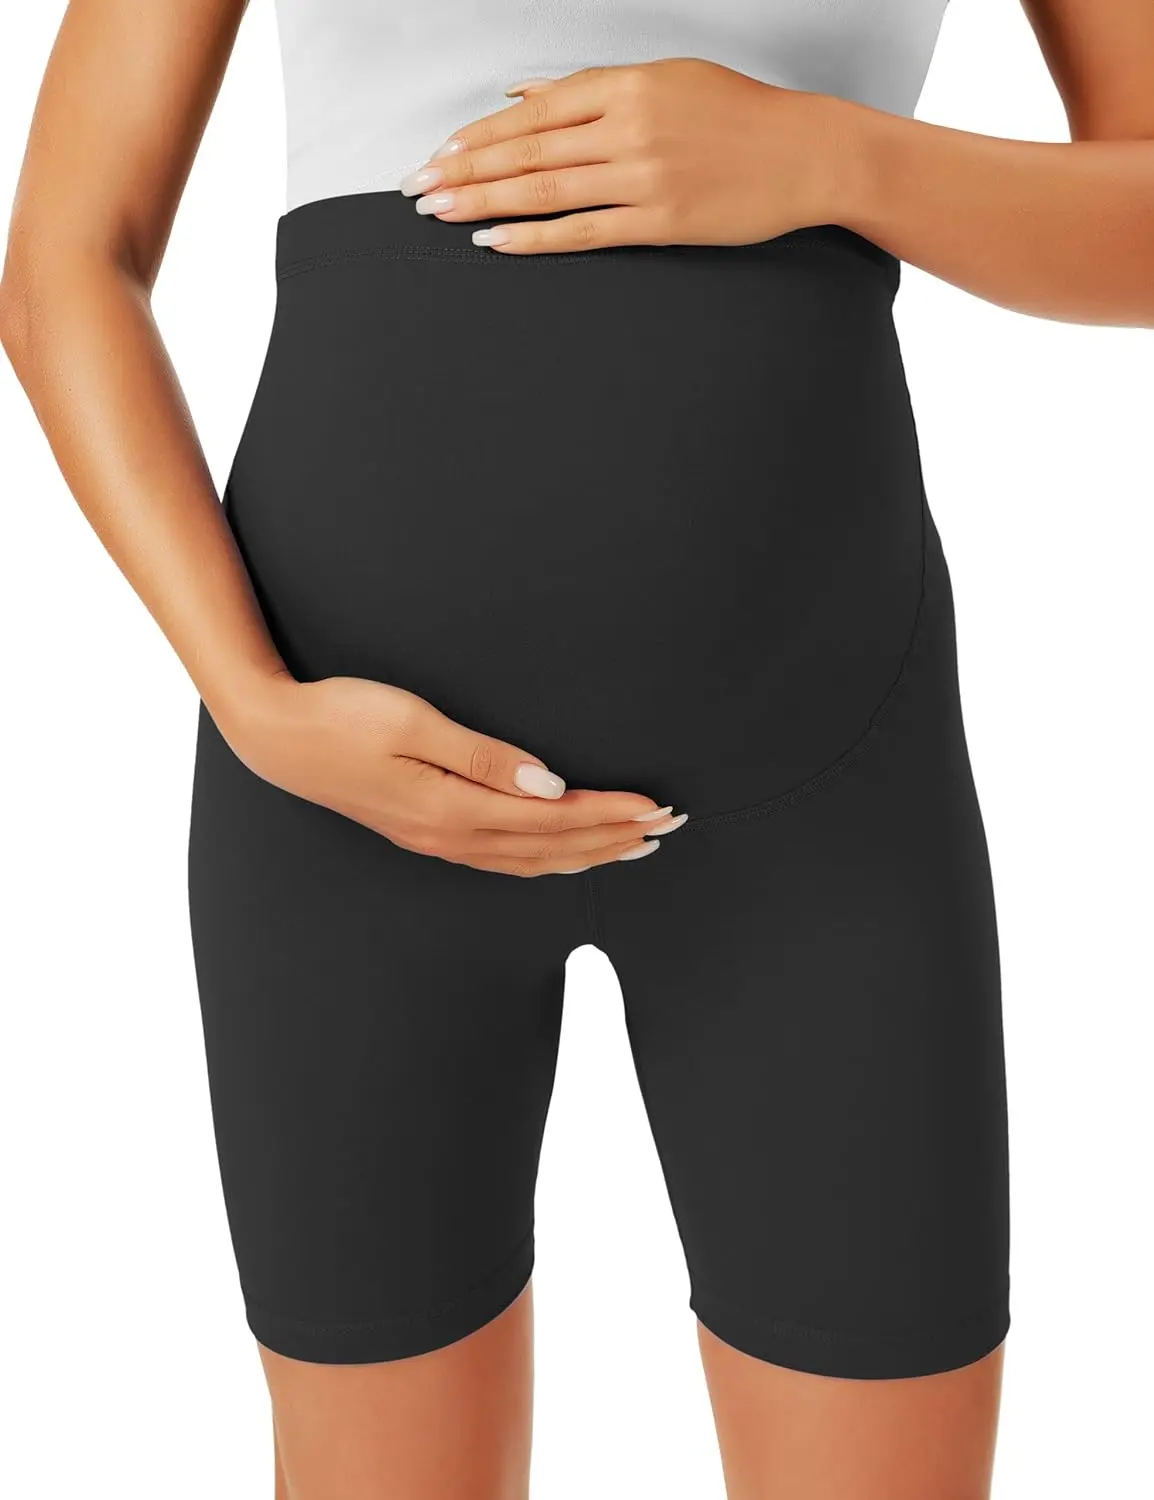 Pantalones cortos de seguridad para mujeres embarazadas, shorts deportivos para ciclismo